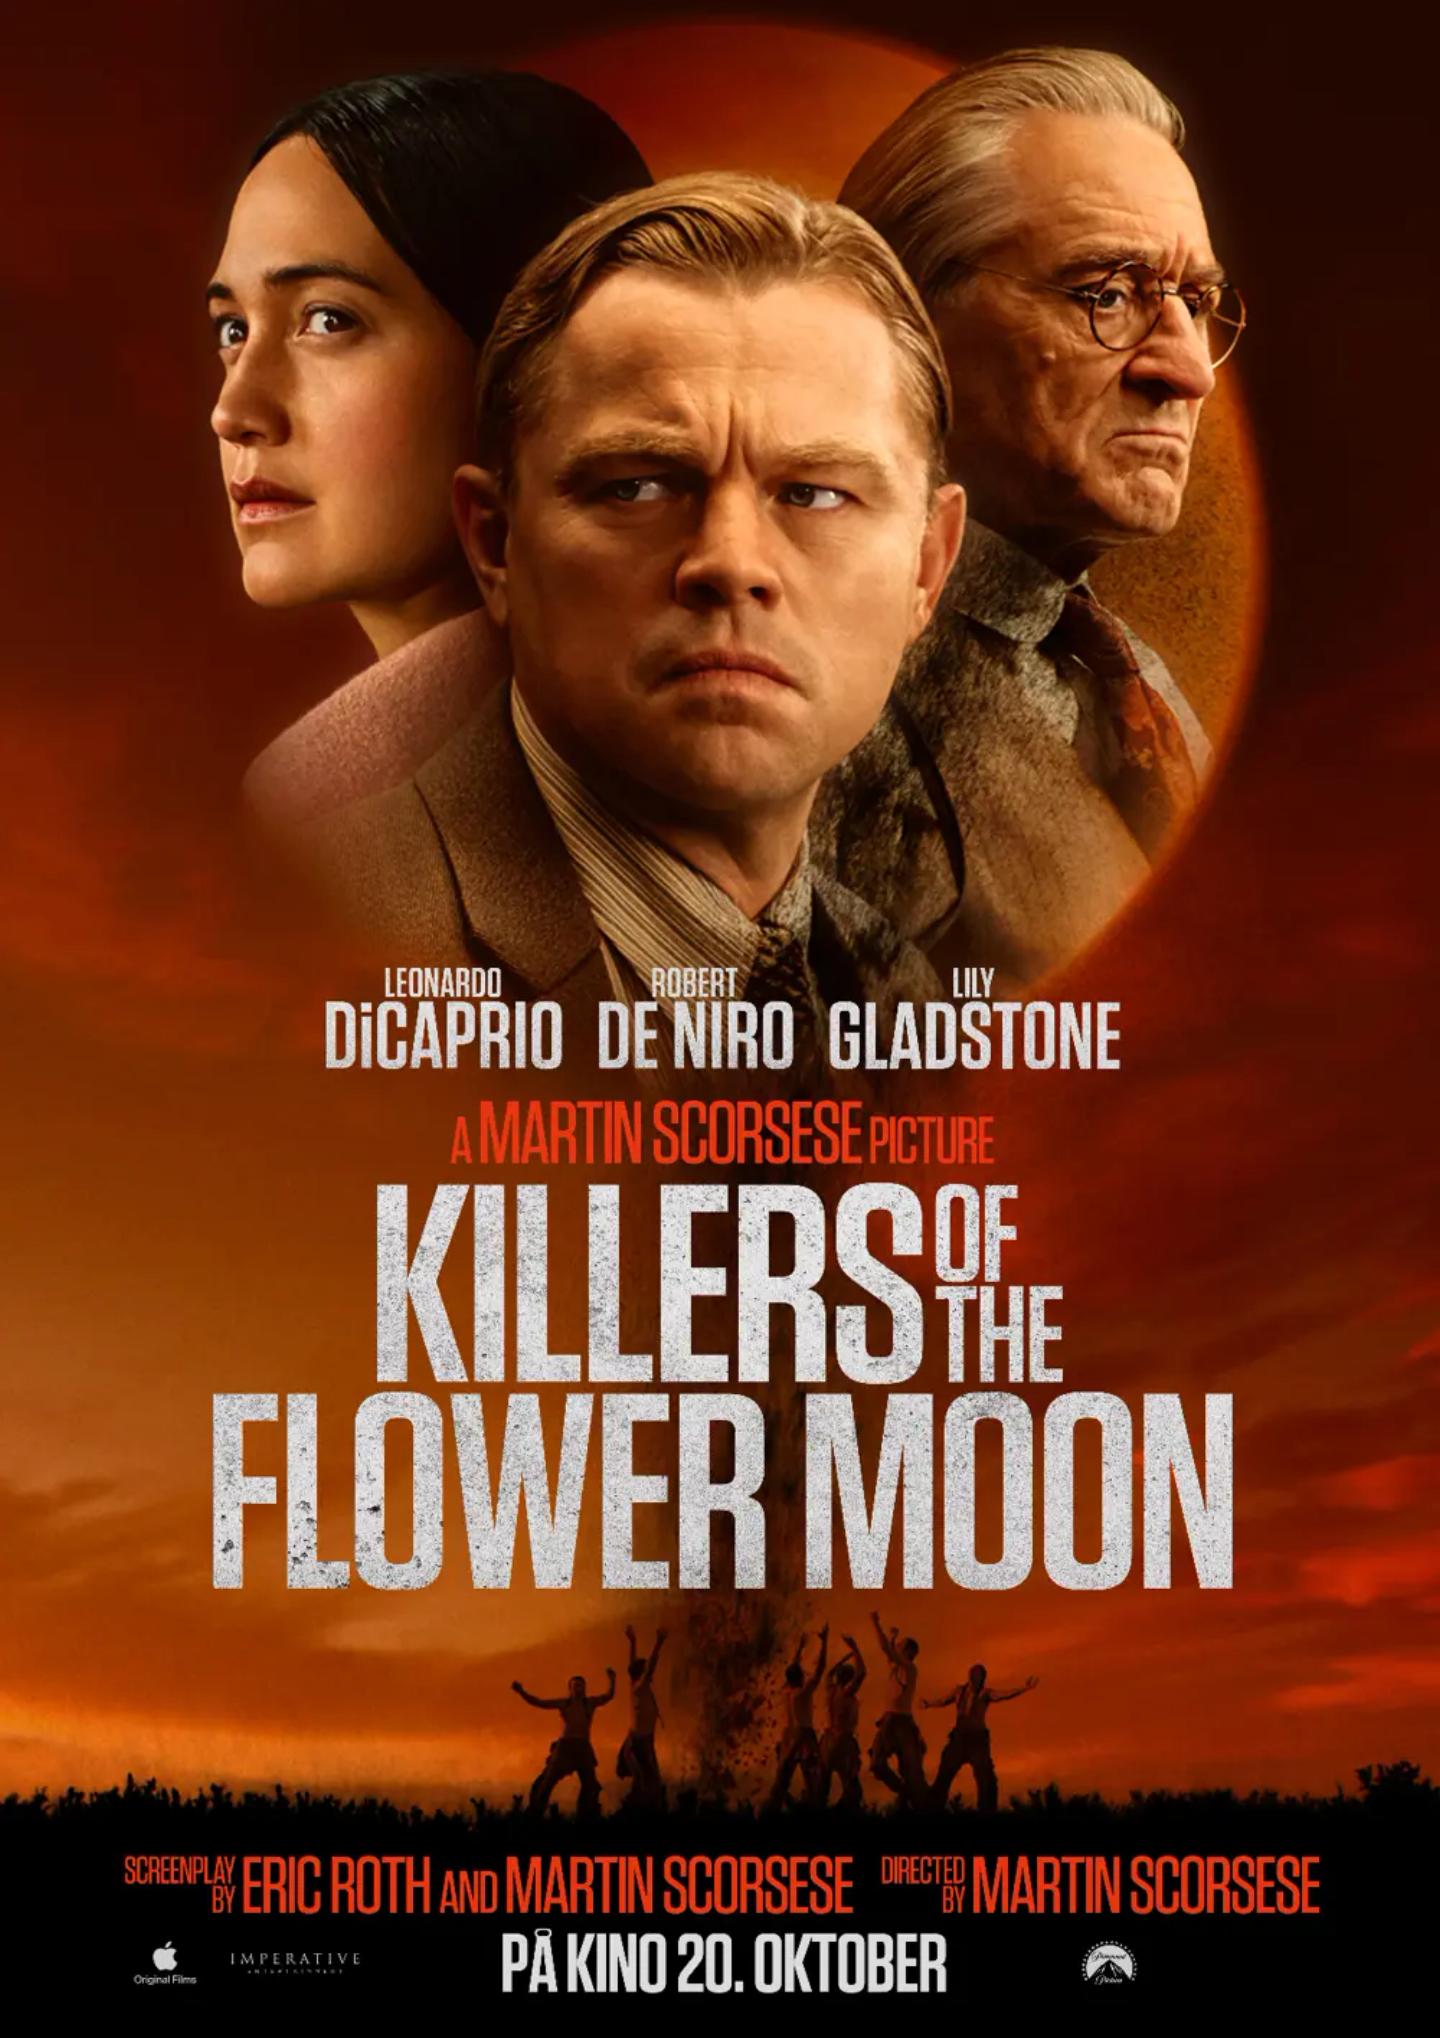 Plakat for 'Killers of the Flower Moon'